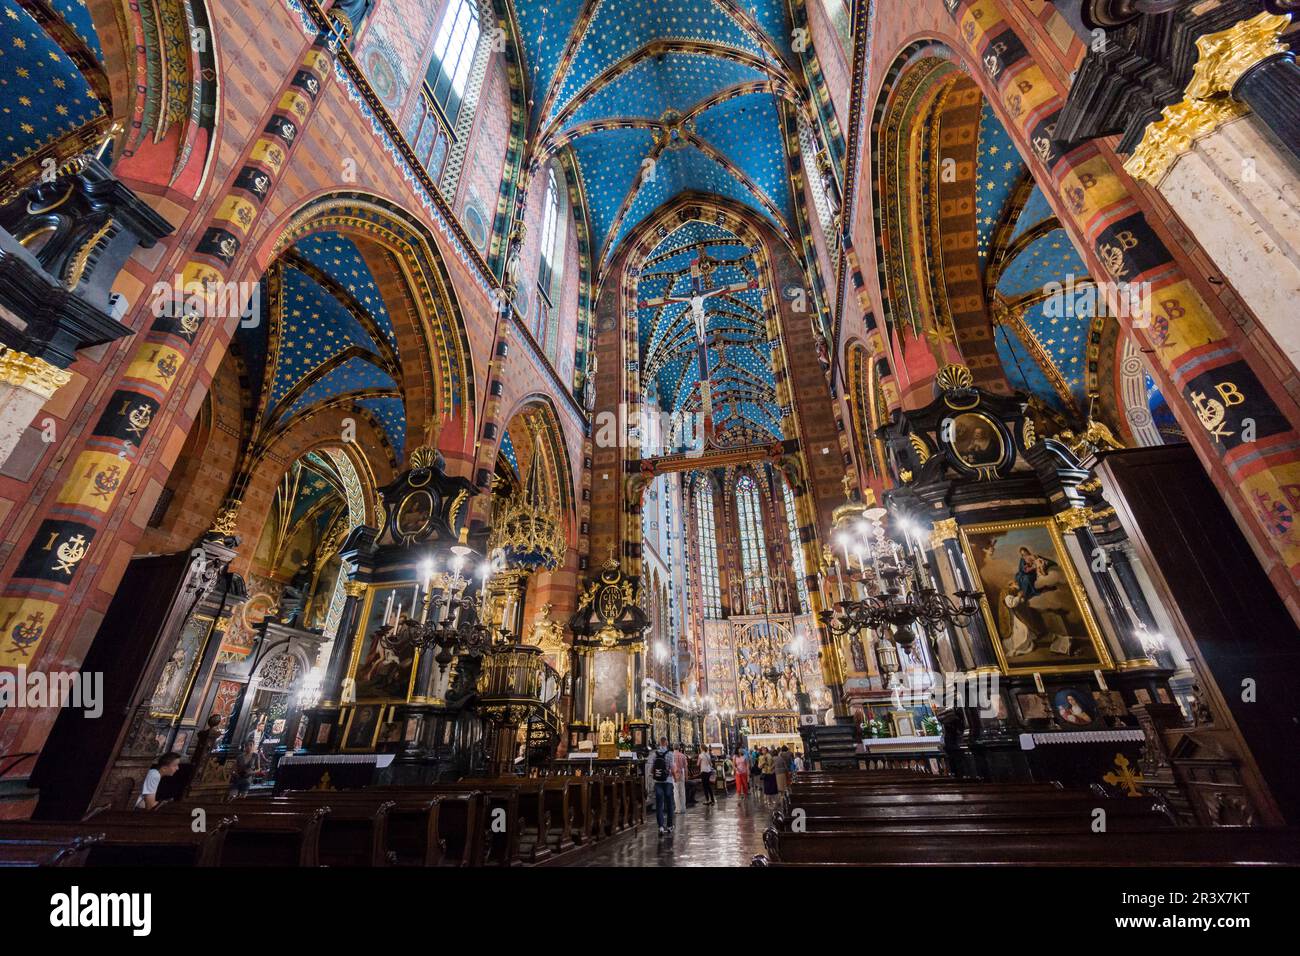 basílica de Santa María -iglesia de la Asunción de la Santísima Virgen María-, estilo gotico, Cracovie, Polonia, europe orientale. Banque D'Images